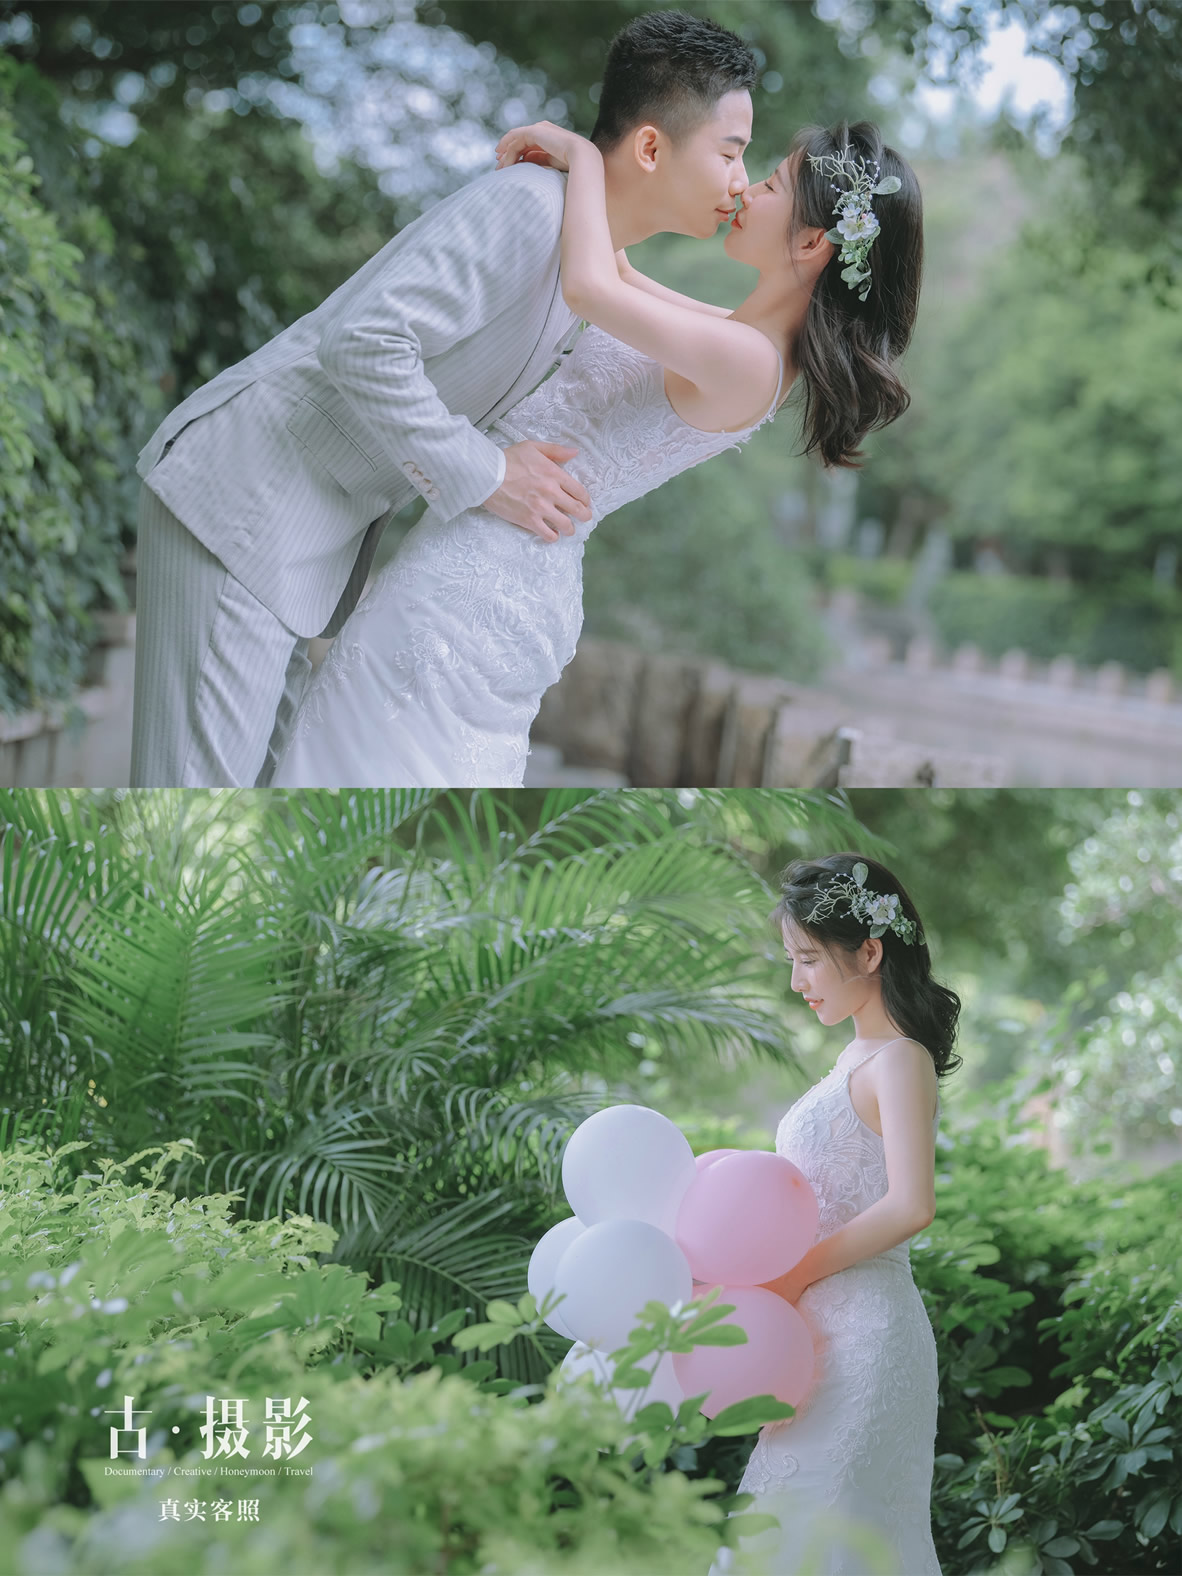 庞先生 李小姐 - 每日客照 - 广州婚纱摄影-广州古摄影官网